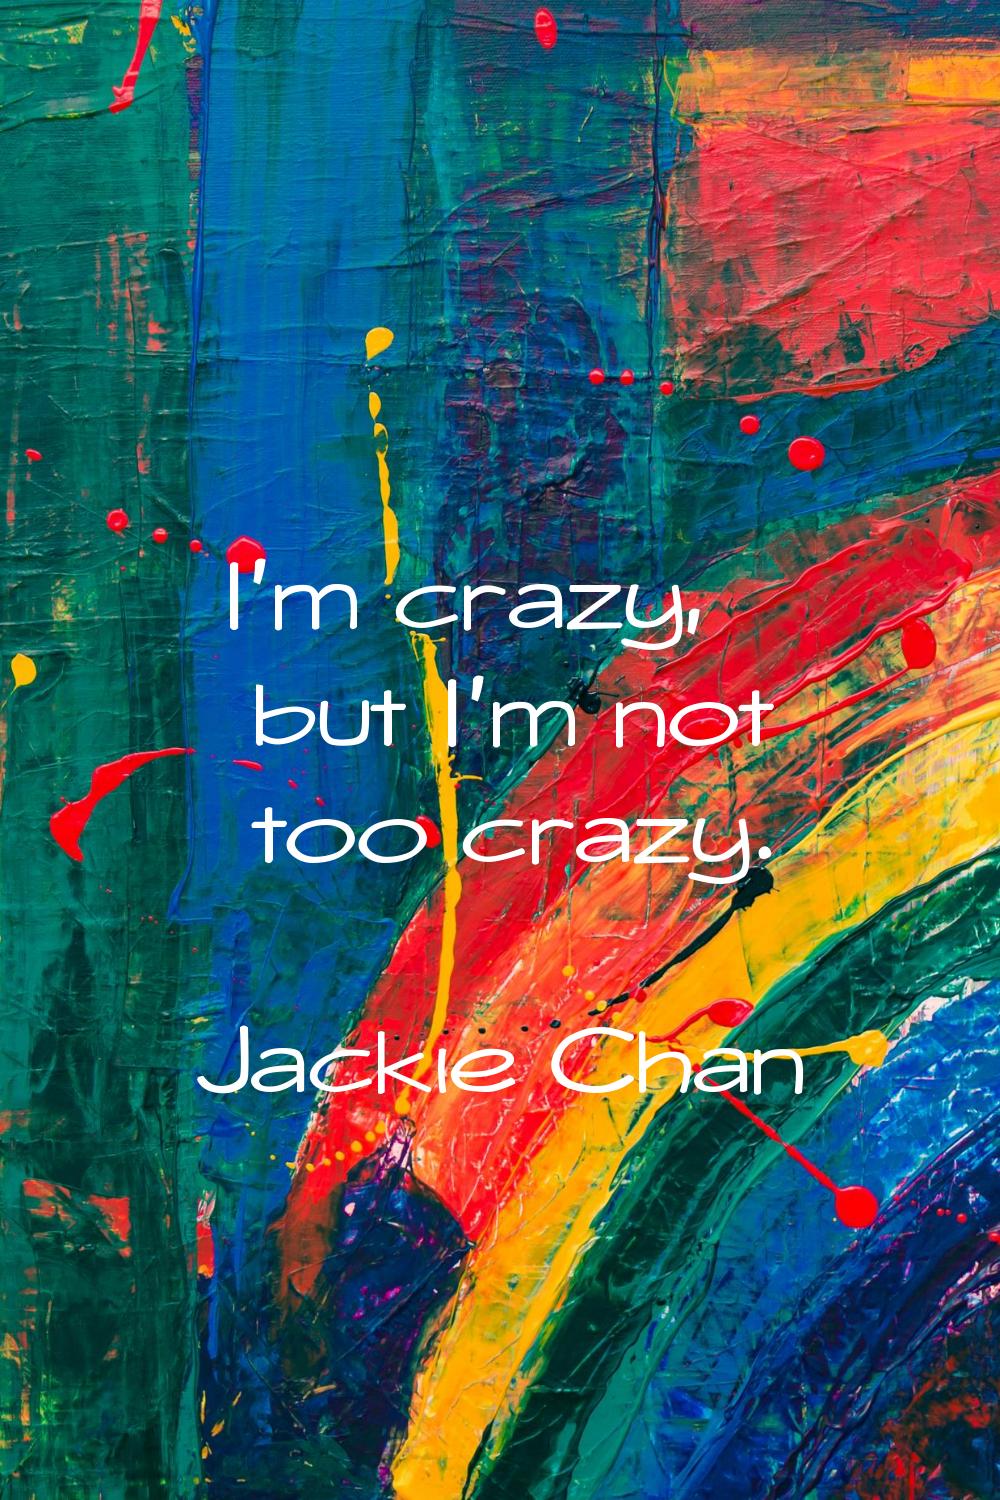 I'm crazy, but I'm not too crazy.